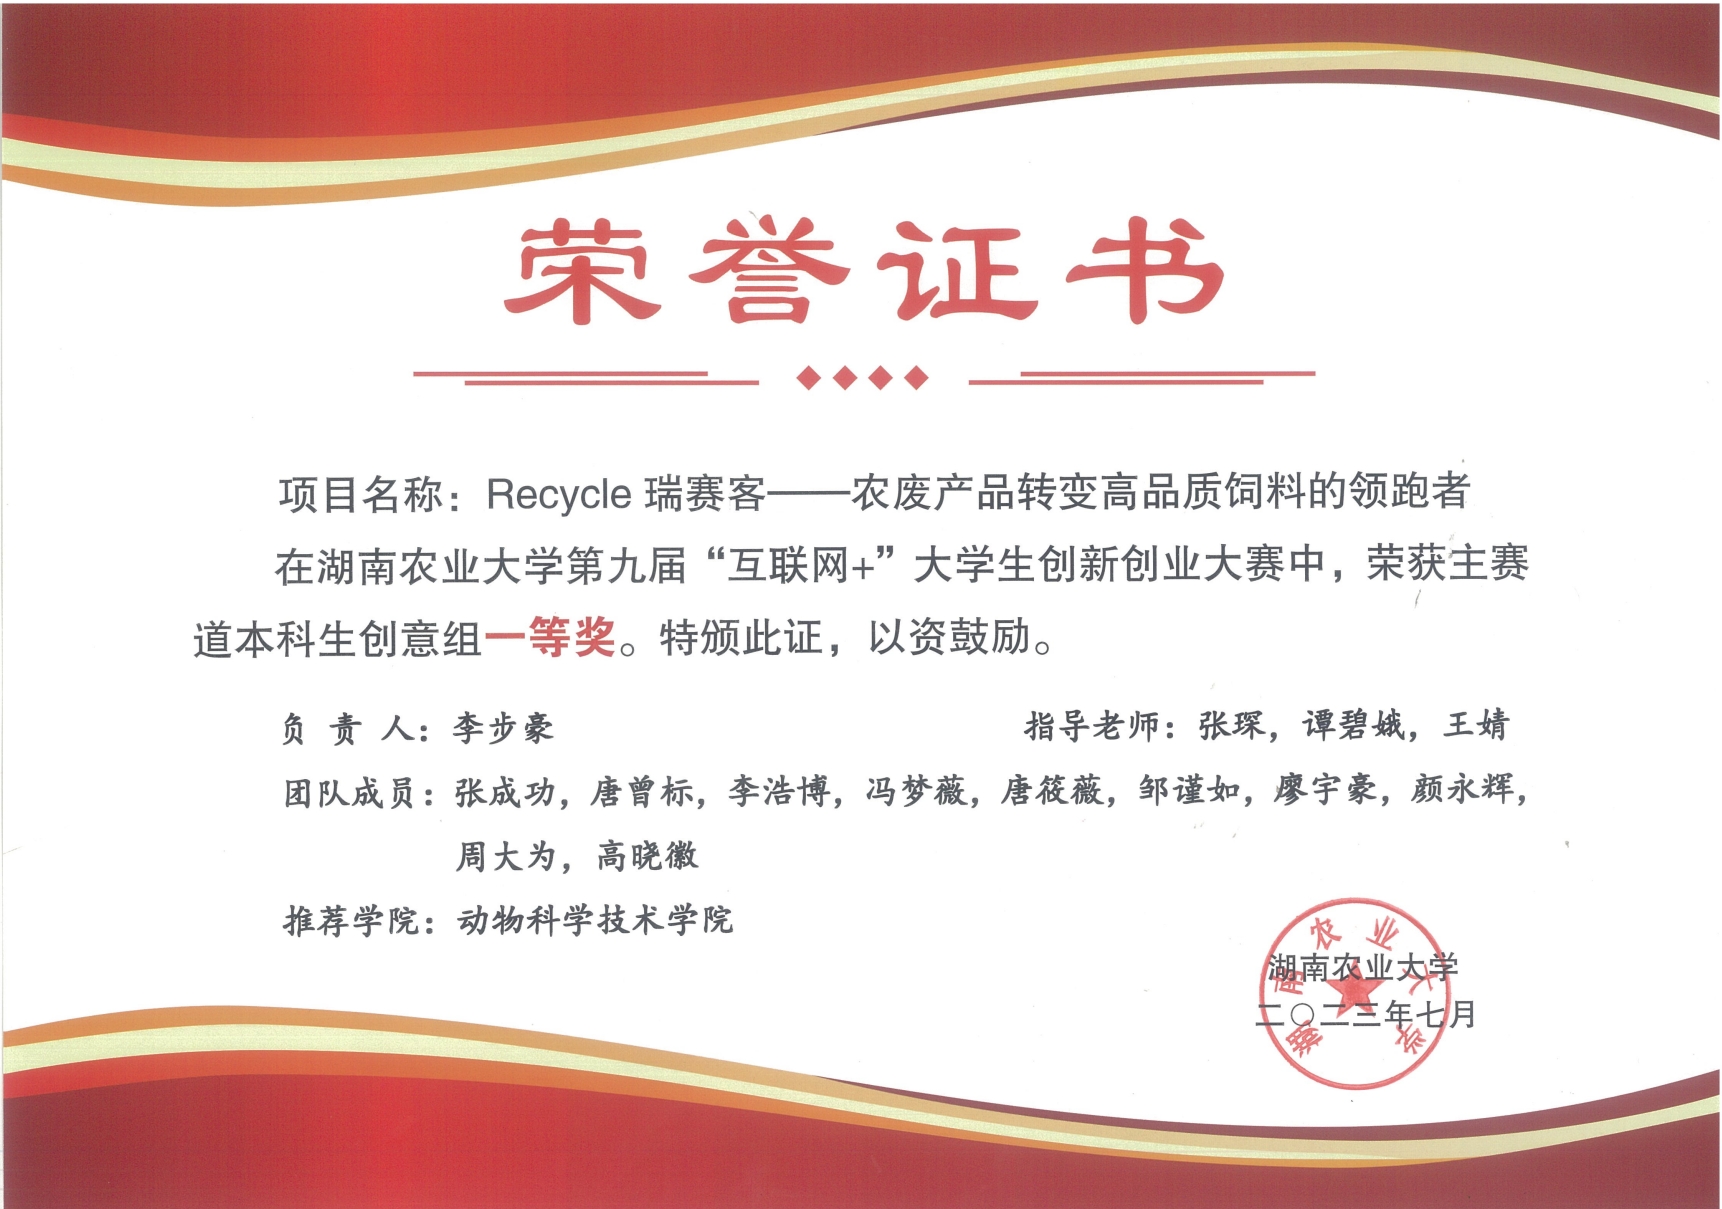 湖南农业大学第九届互联网+创新创业大赛优秀作品：Recycl